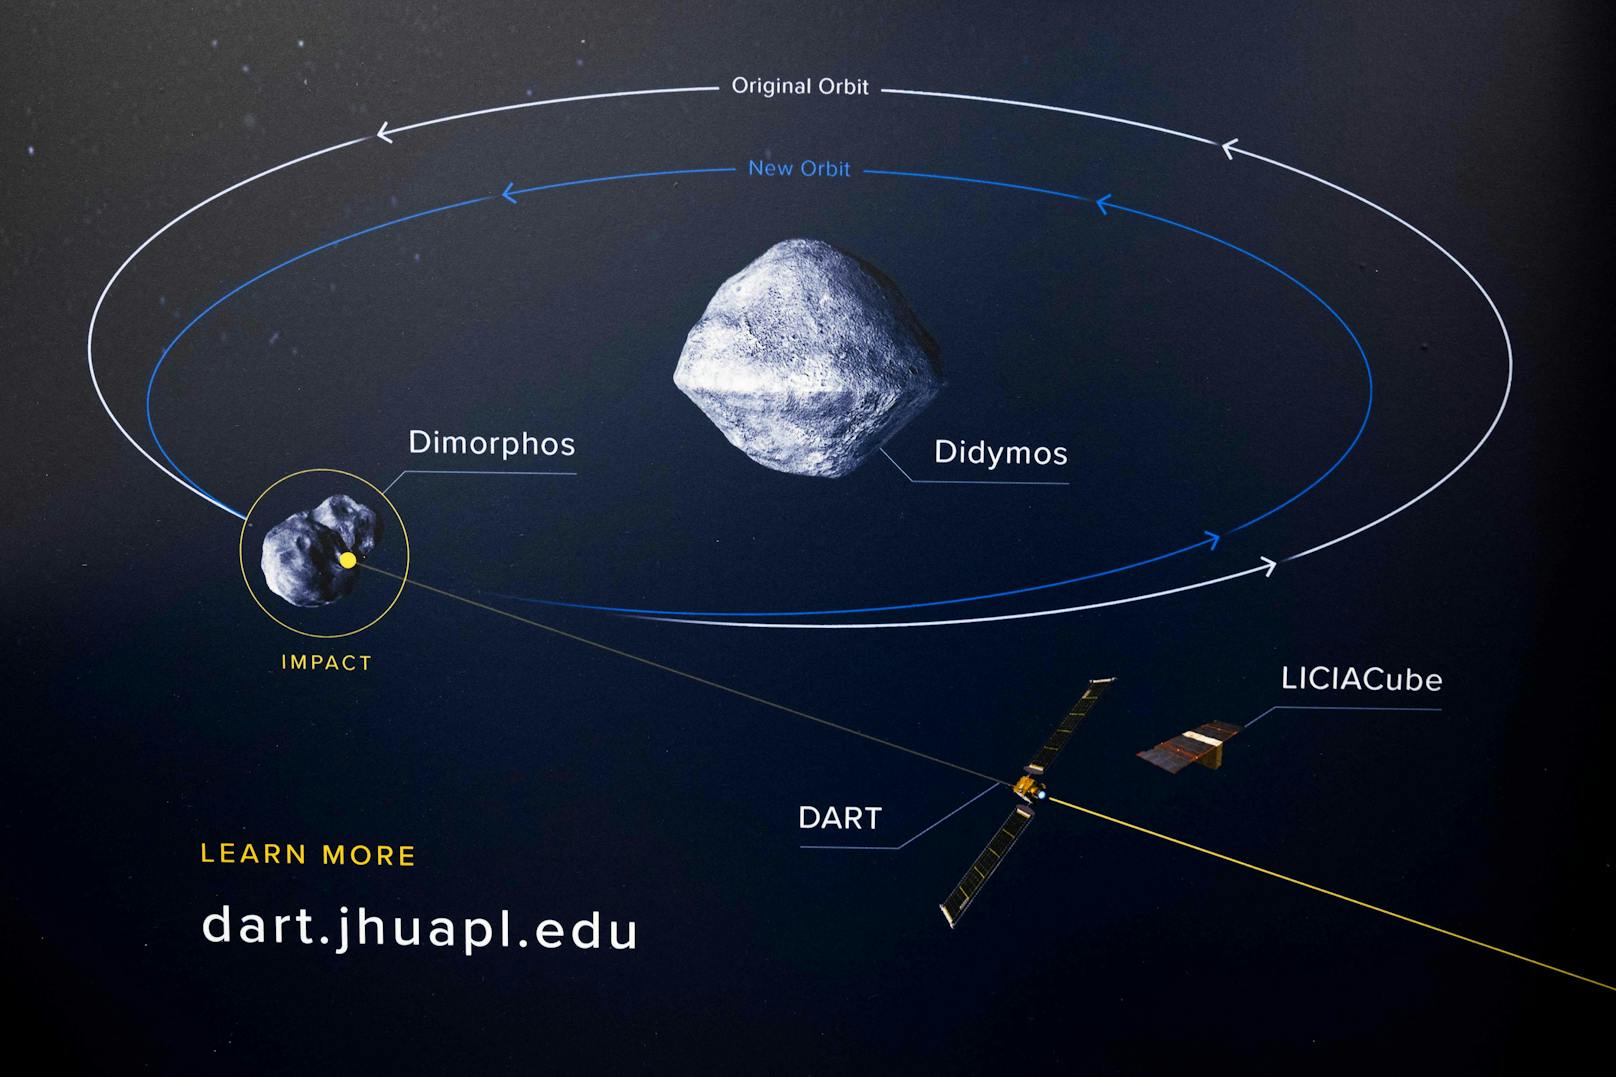 Mit der&nbsp;330 Millionen Dollar teuren DART-Mission (Double Asteroid Redirection Test) will man herausfinden, ob sich so ein Himmelskörper nicht zerstören, aber in seiner Umlaufbahn umlenken lässt und so möglicherweise in Zukunft die Erde vor einem Einschlag zu schützen.